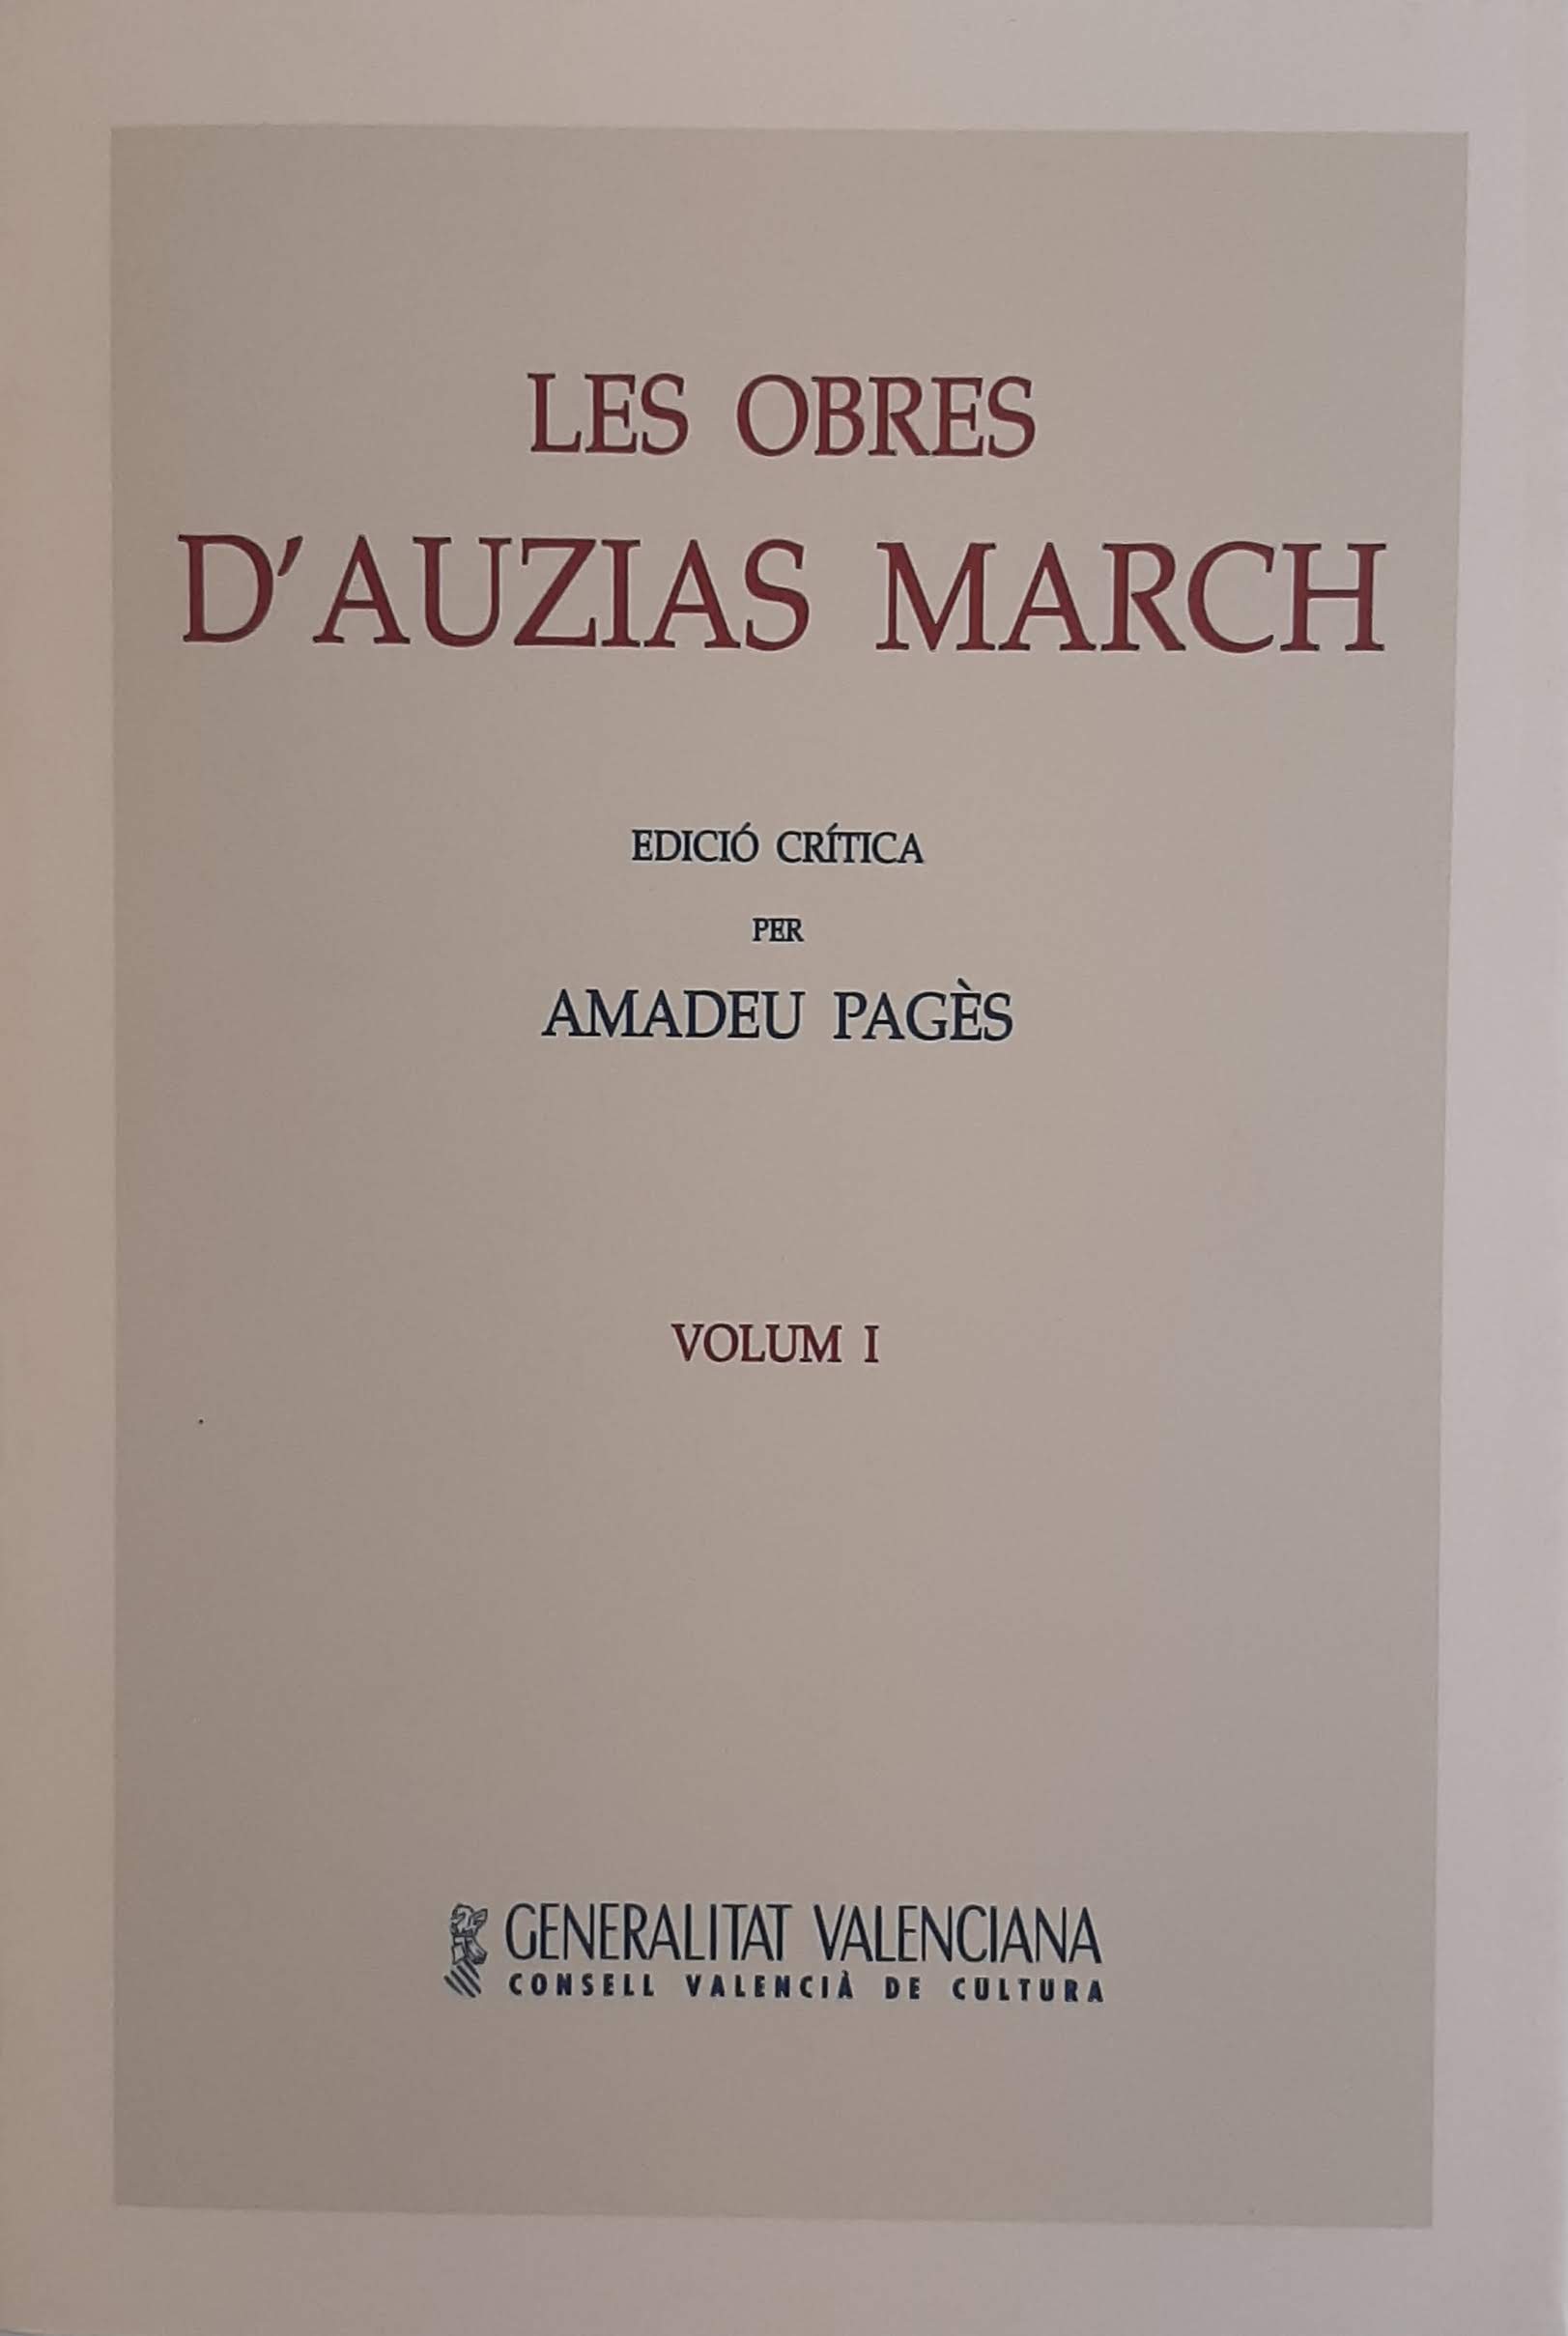 Les obres d'Auzias March. Volum I. Nº 21